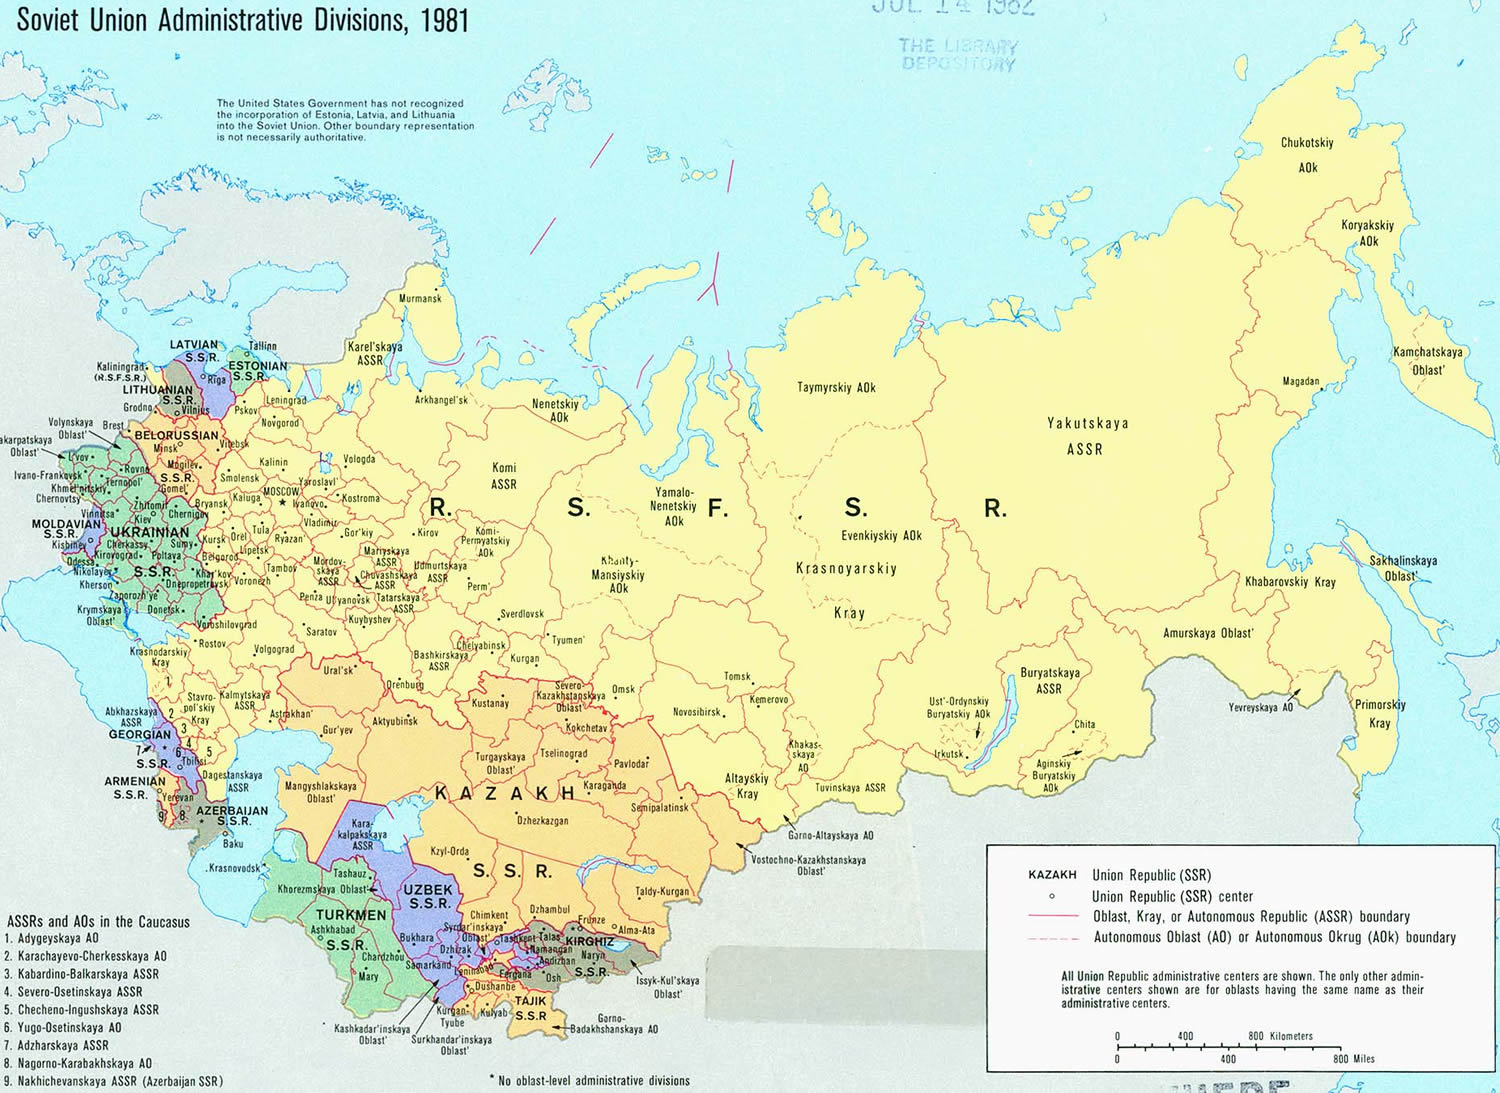 sovyetler birligi haritasi 1981